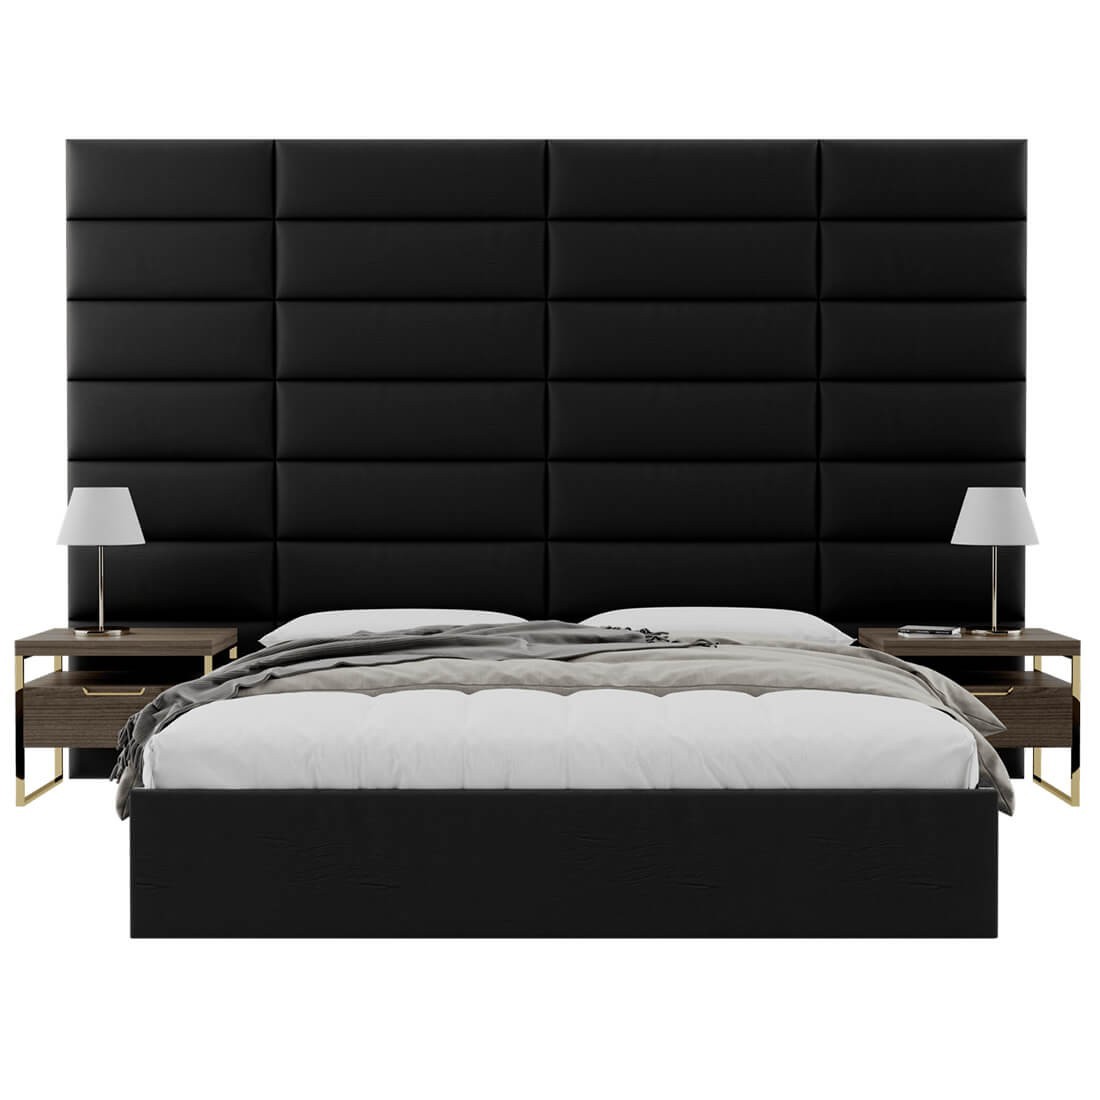 MEGADECOR Tête de lit décorative en PVC Motif abstrait Marmol Multicolore avec veines Plusieurs dimensions 200 cm x 60 cm 